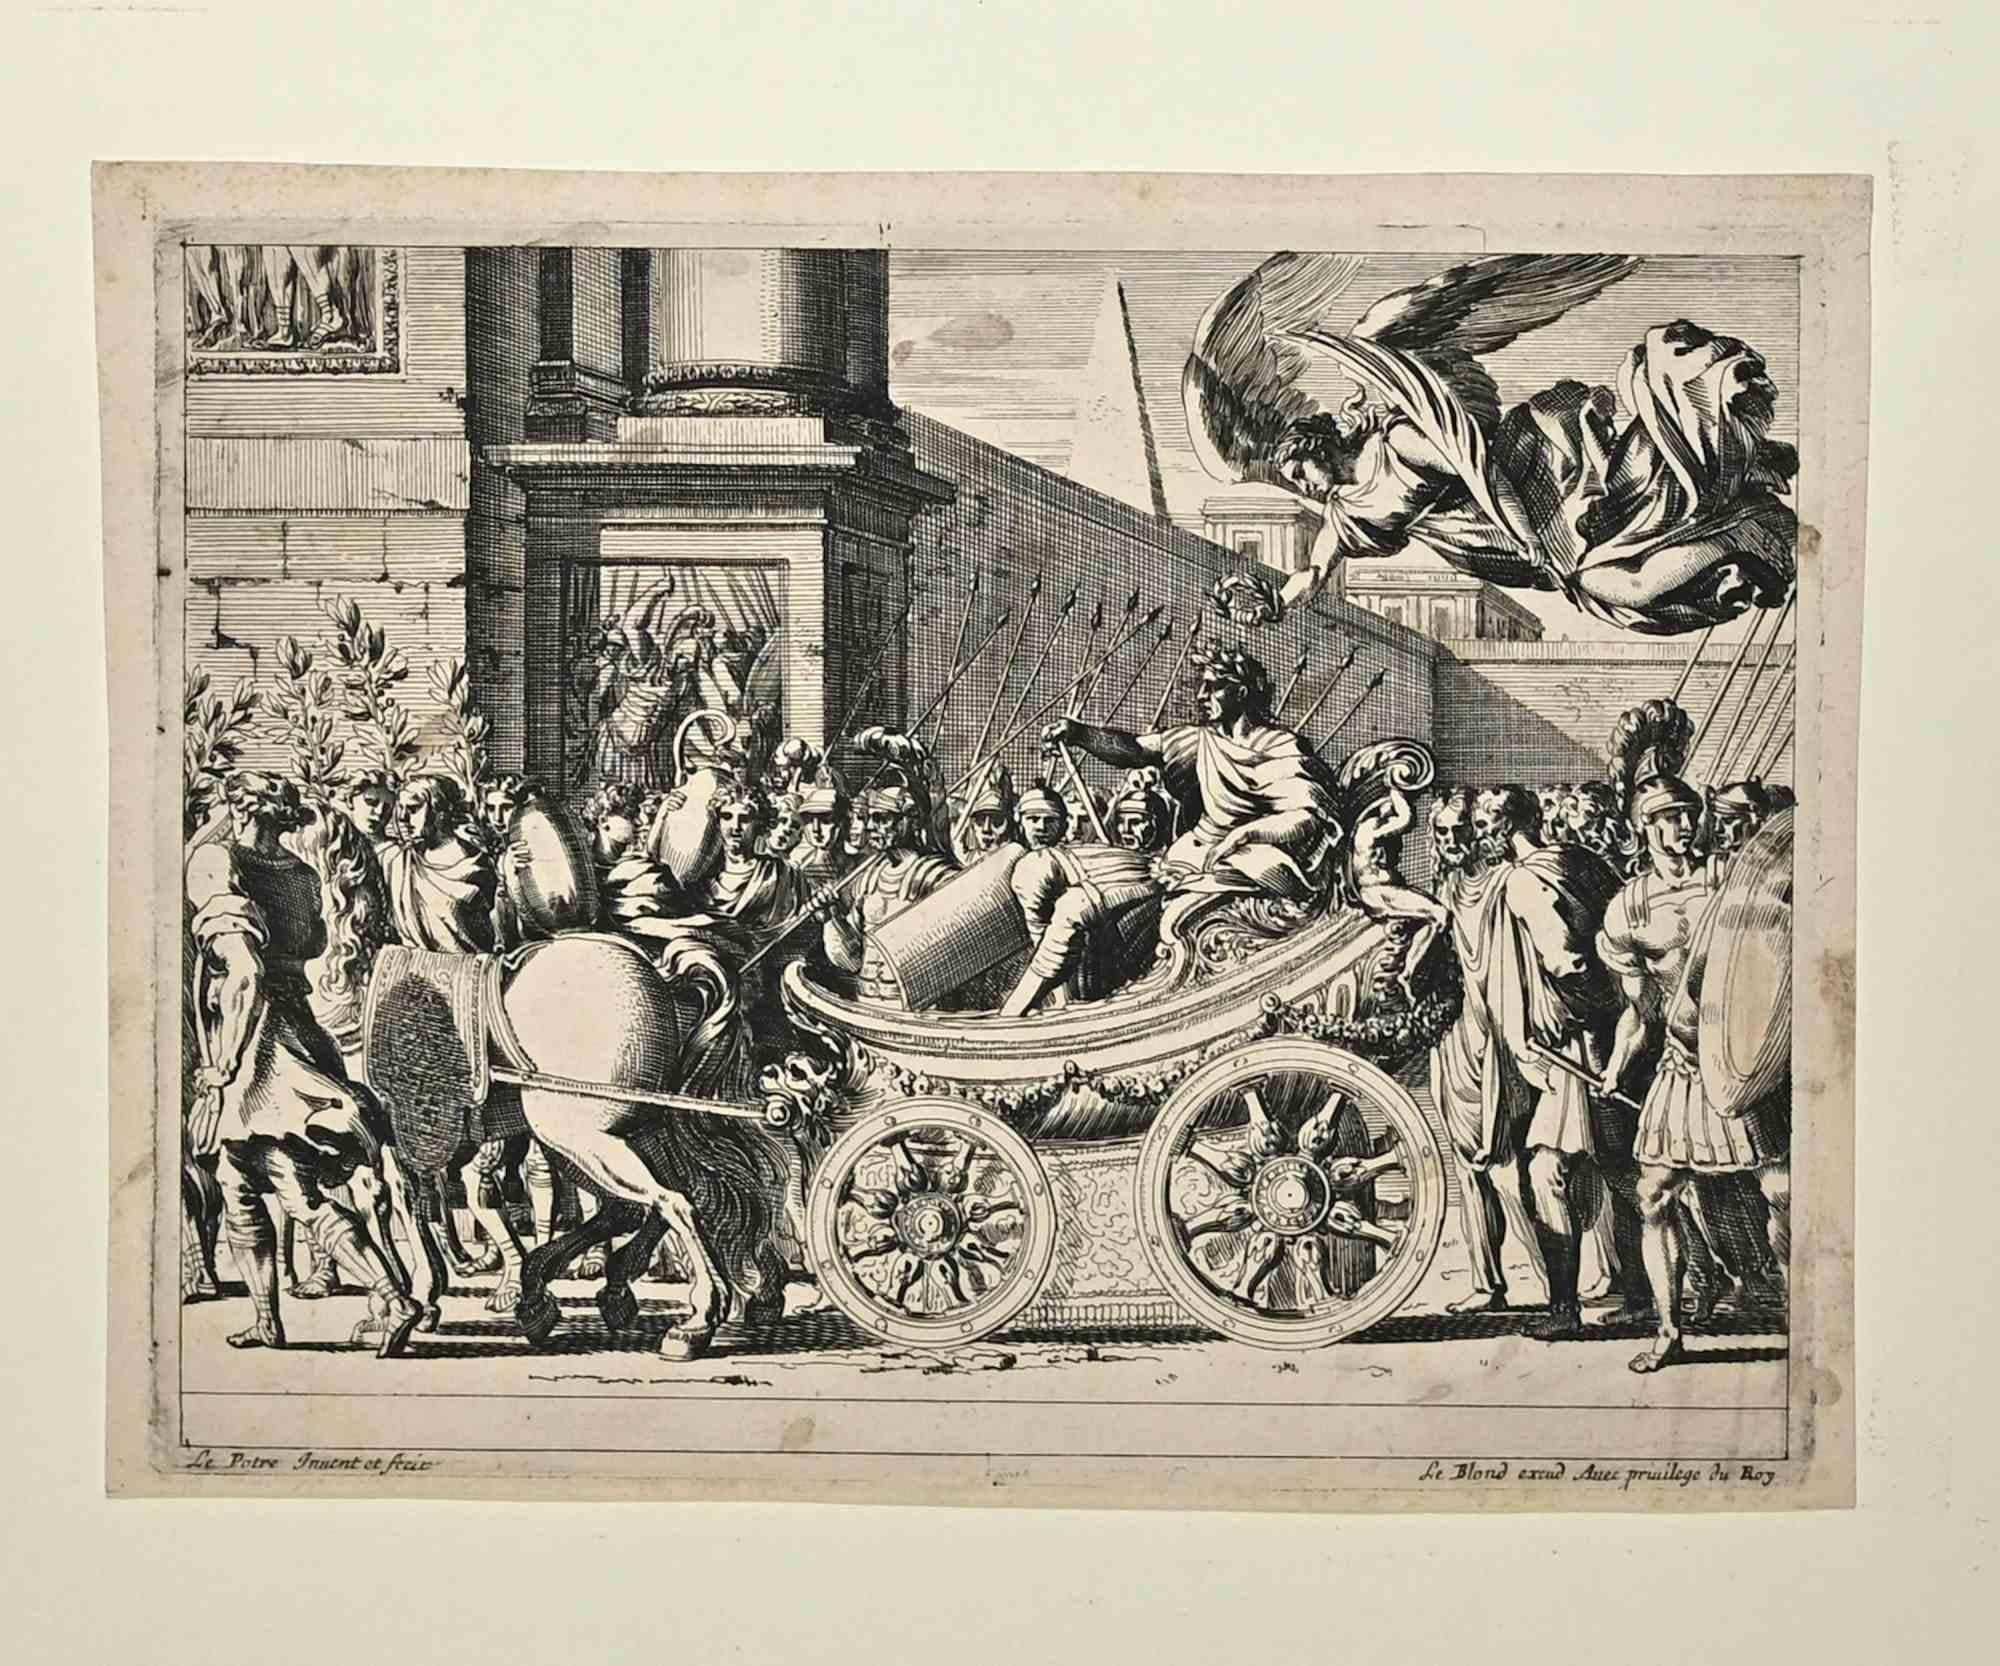 Jules César victorieux est une eau-forte réalisée par Jean Lepautre (1618-1682).

L'œuvre décrit l'entrée à Rome de Jules César victorieux.

Au dos du papier, le tampon de CHRISTUS PROTECTOR MEUS.

Collection d'Arenberg (Bruxelles et